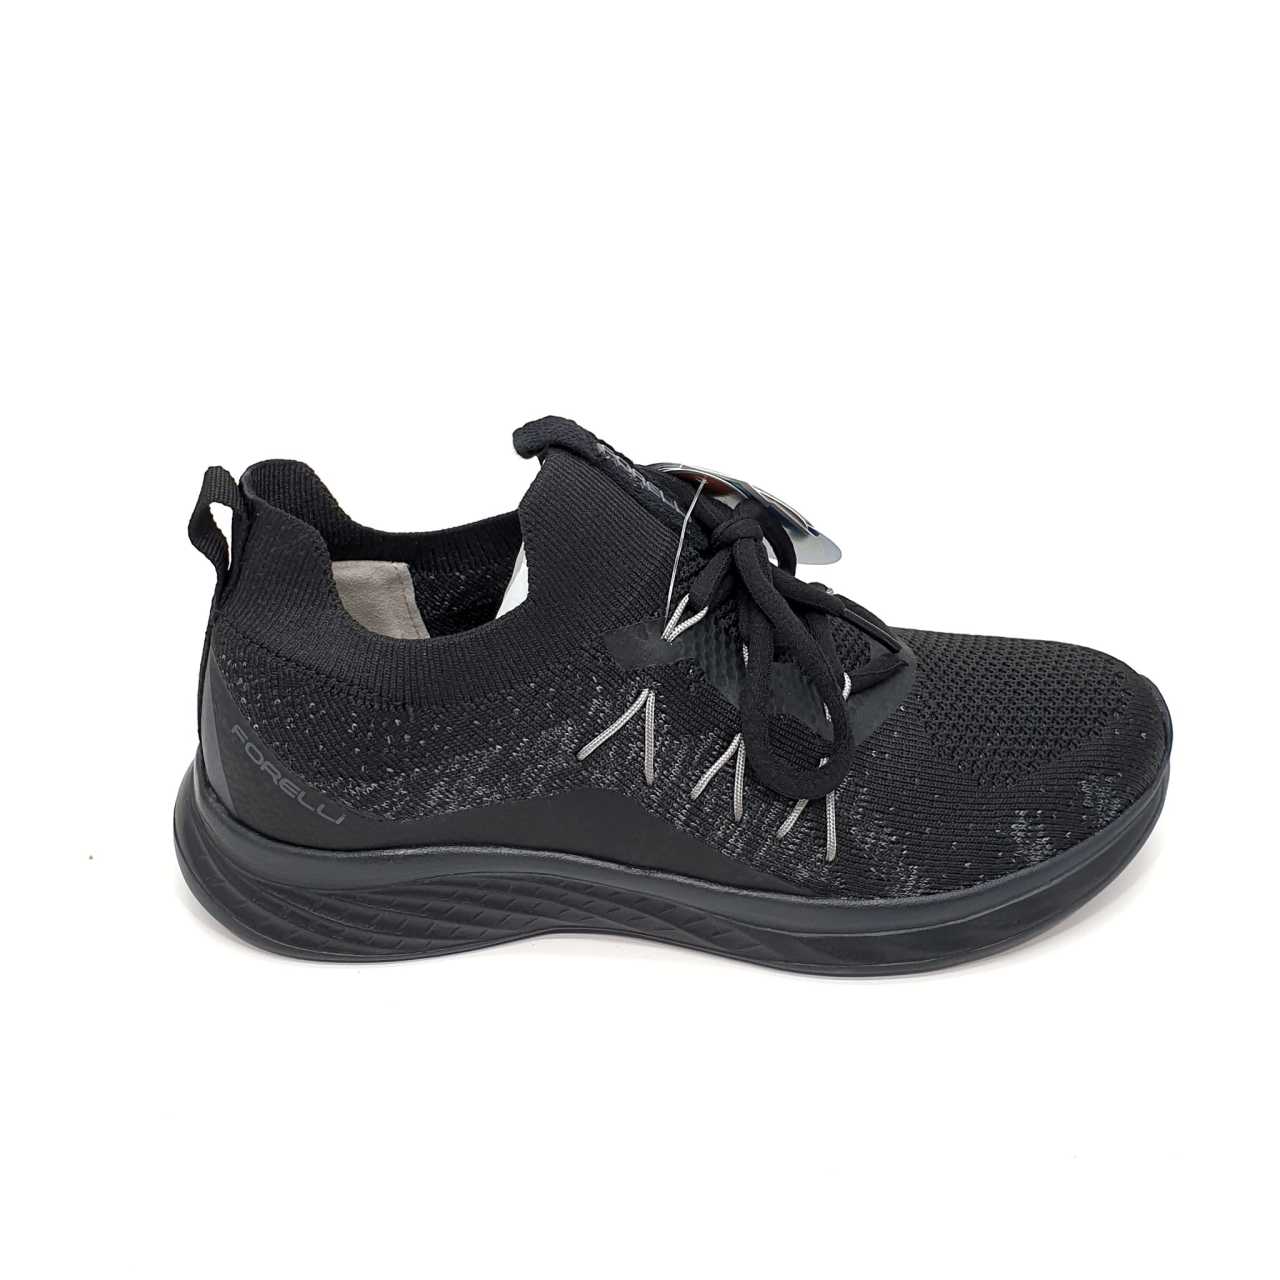 FORELLİ Nil-G Anatomik Siyah Tekstil Yürüyüş Ayakkabısı